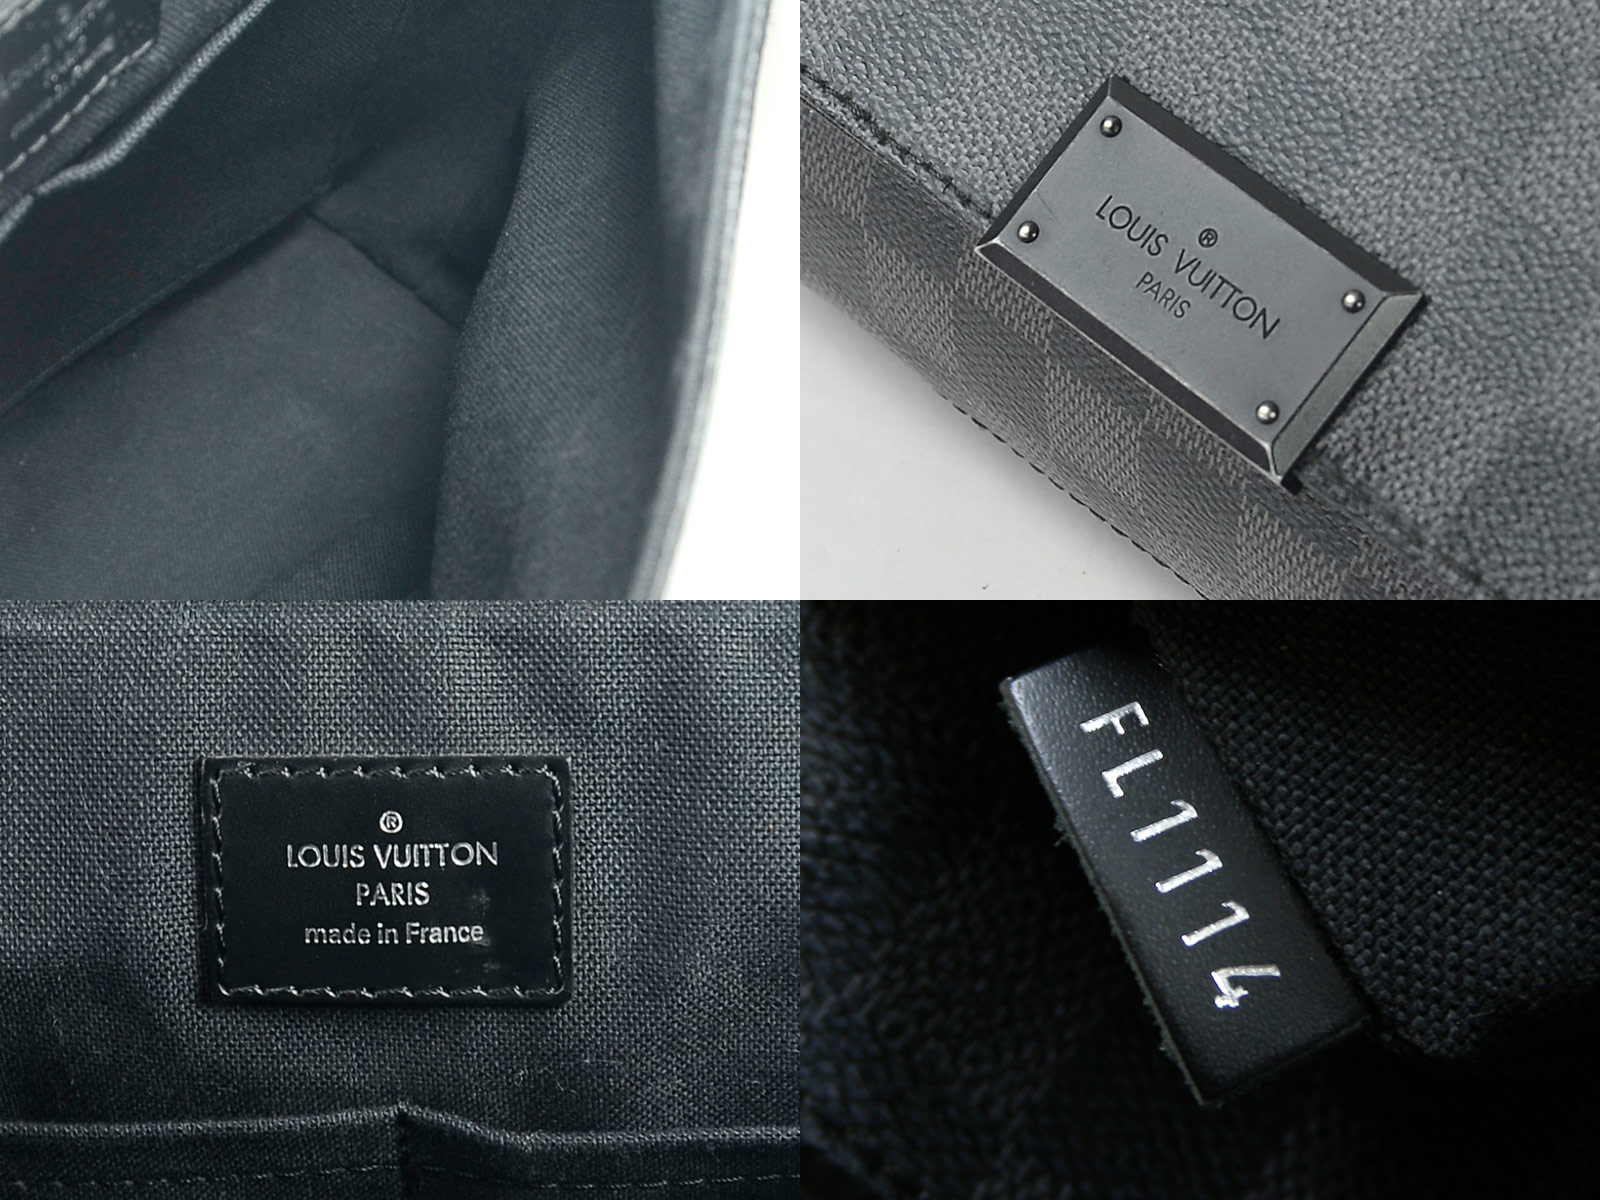 Auth Louis Vuitton Damier Graphite District PM Shoulder Bag N41260 - 96074 | eBay